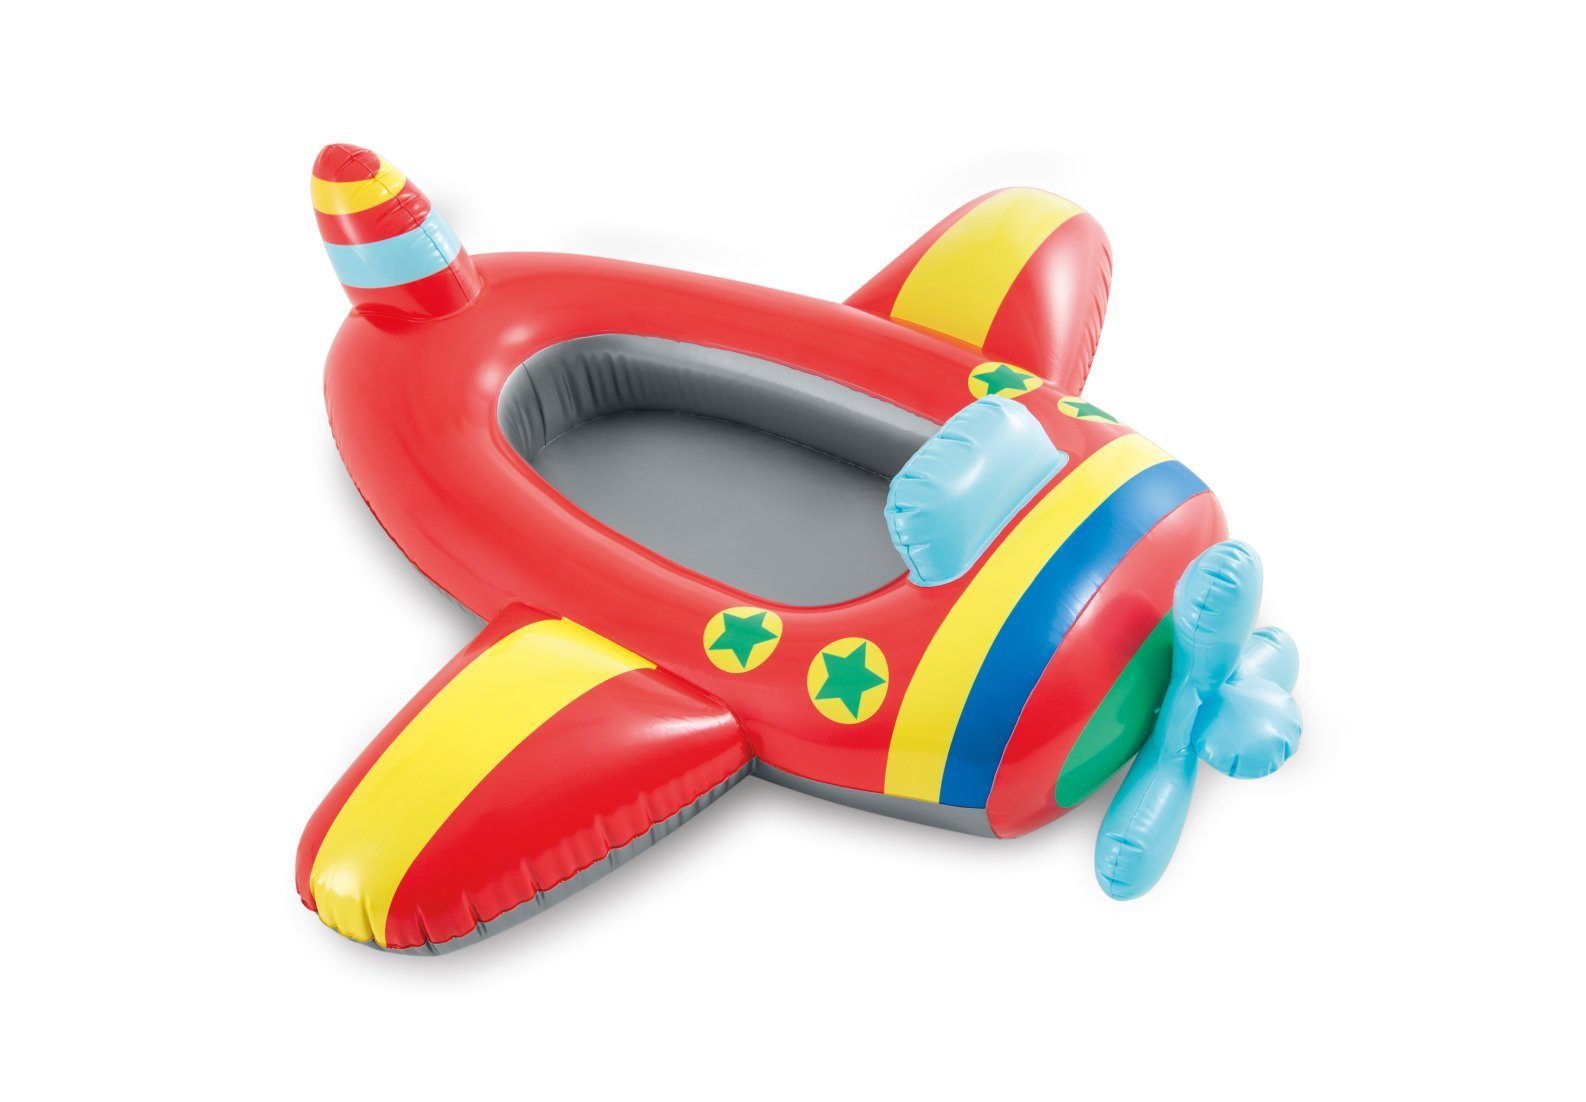 Intex Kinder-Schlauchboot Kinderboot Kinder Boot Pool Cruiser Badeboot Gummiboot Planschbecken